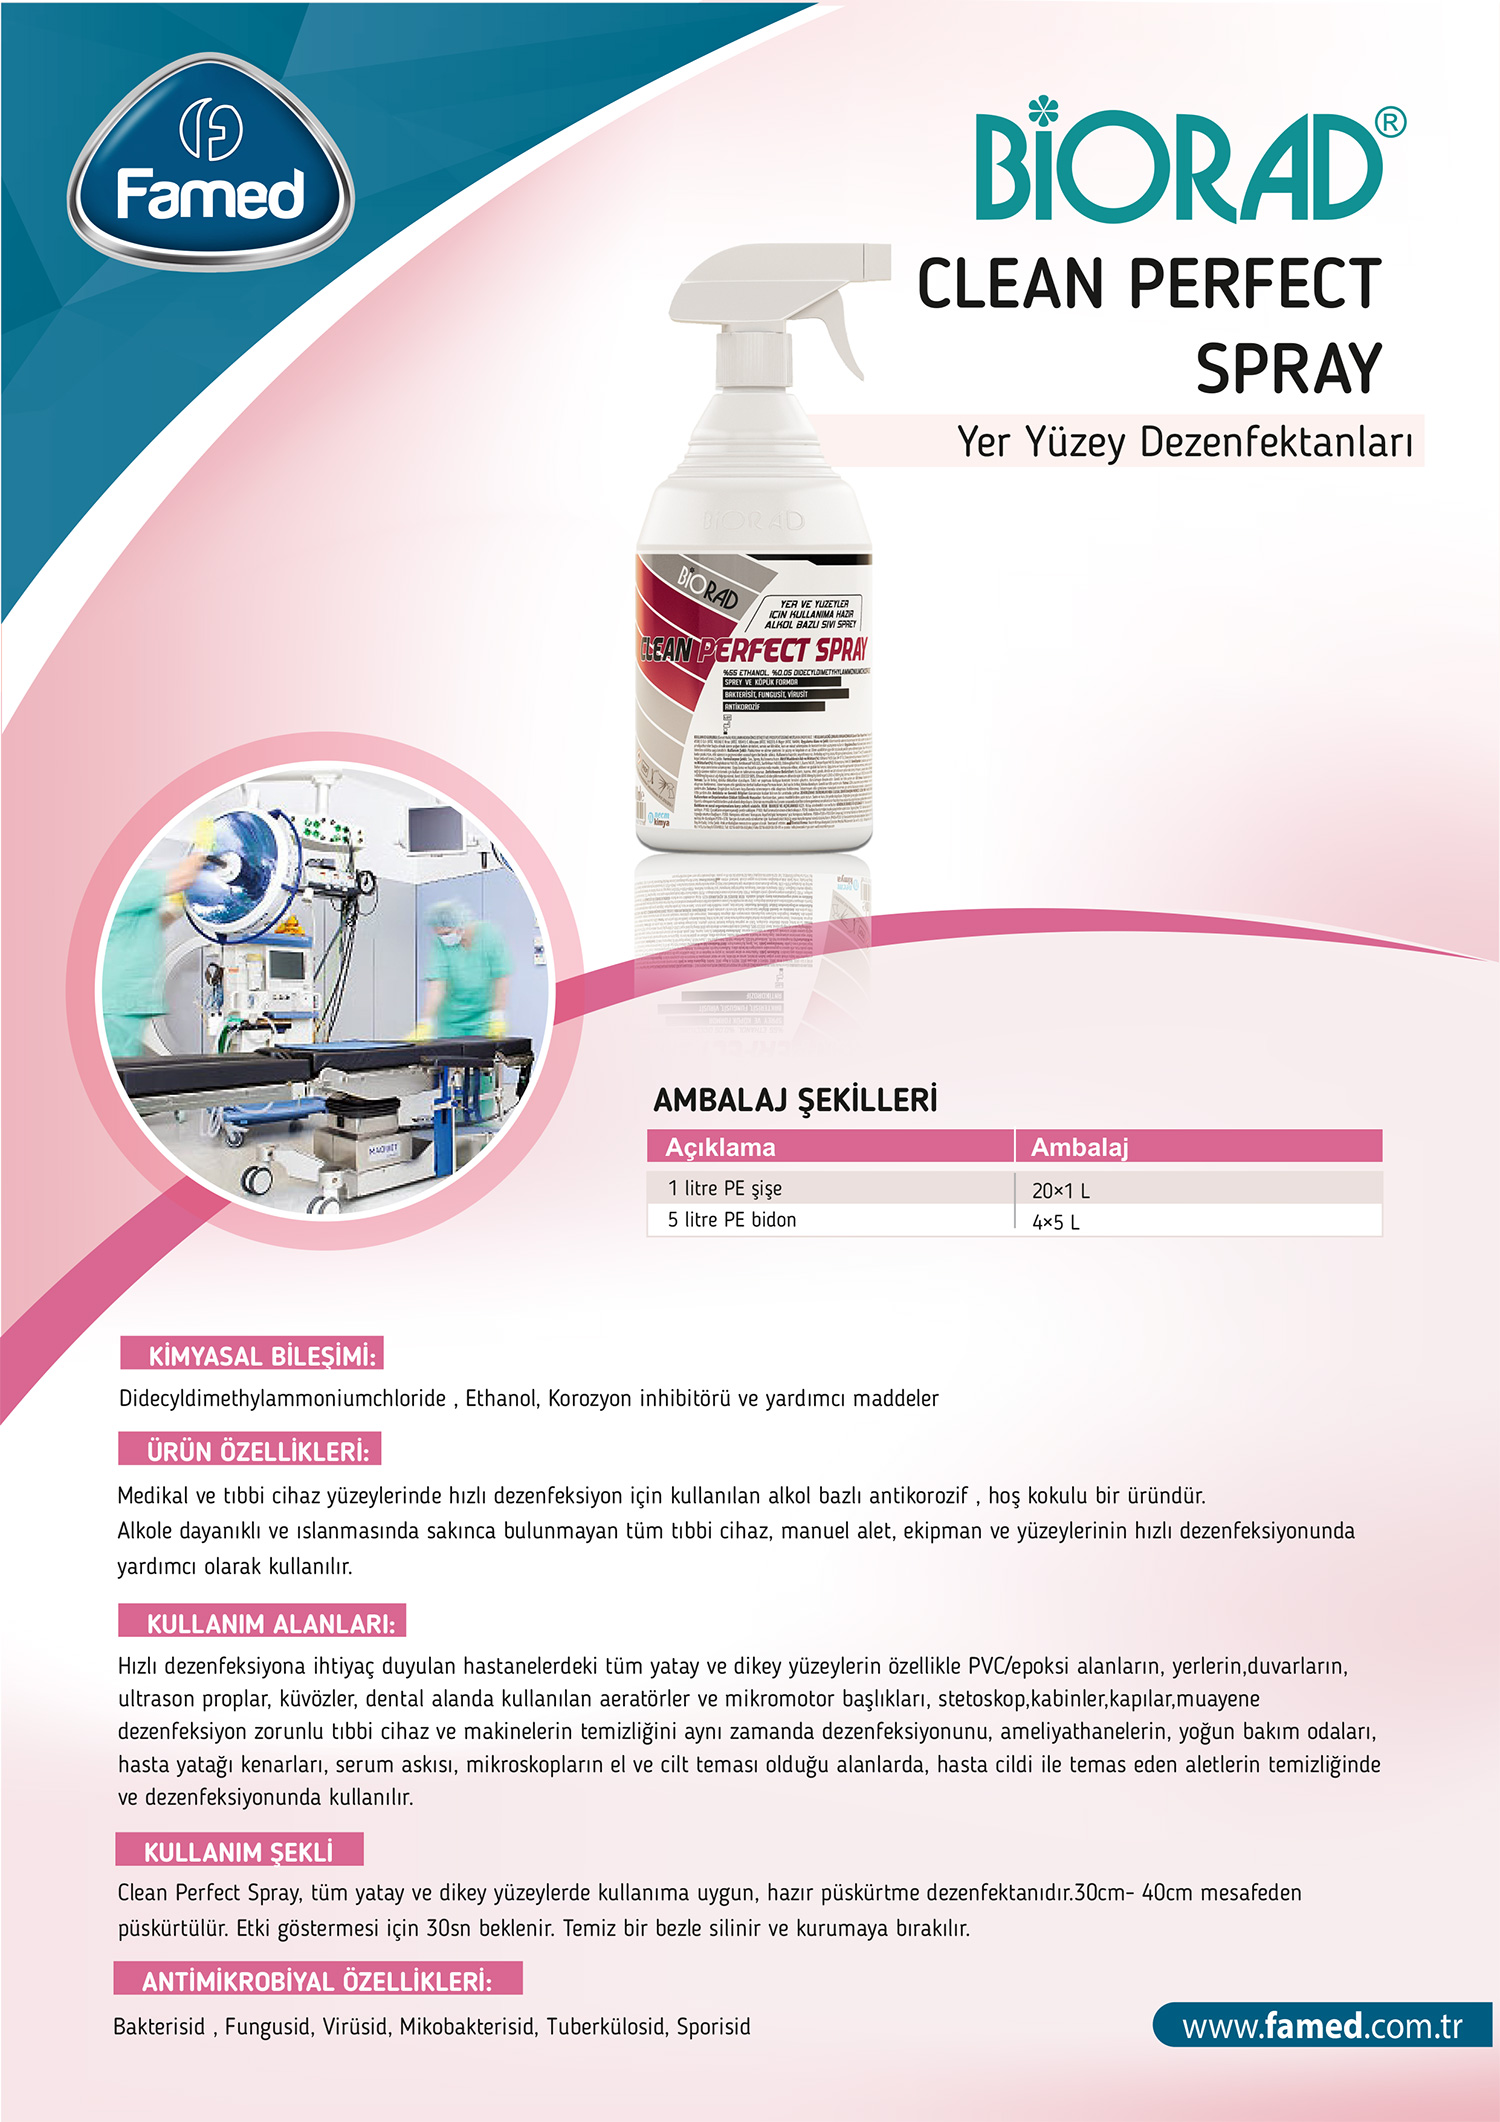 Yer Yüzey Dezenfektan Clean Perfect Spray